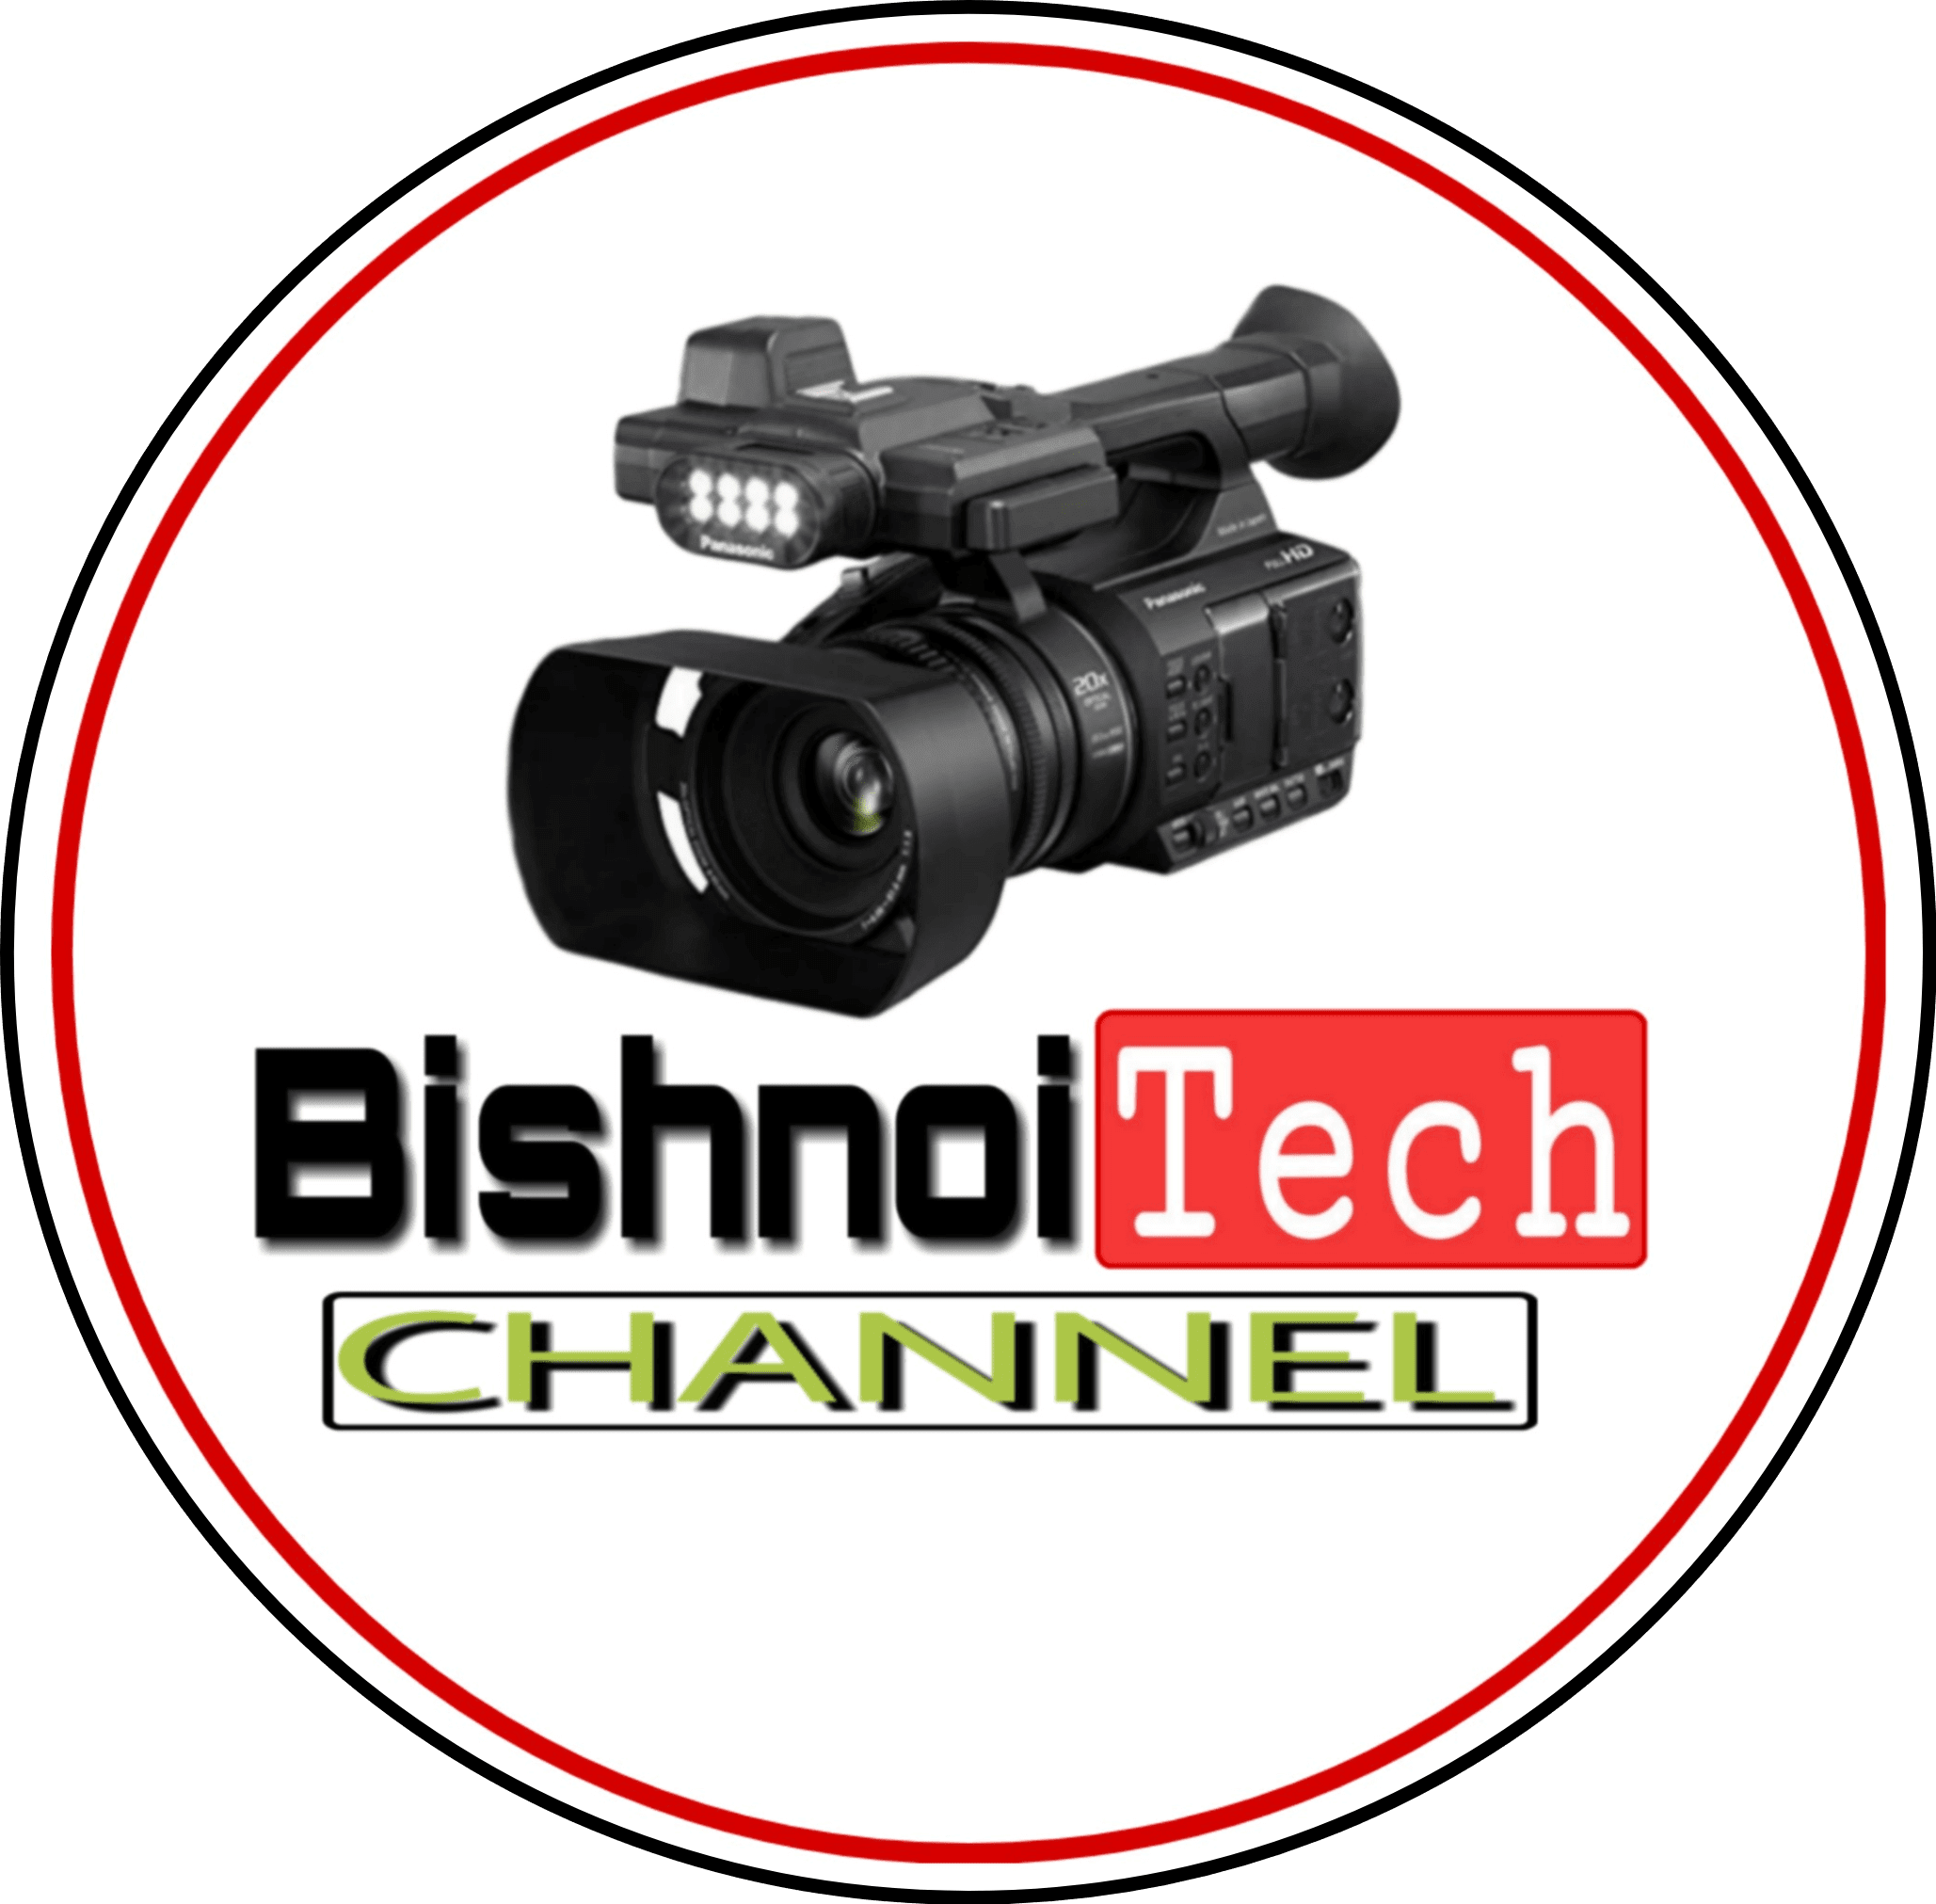 Bishnoi Tech Channel